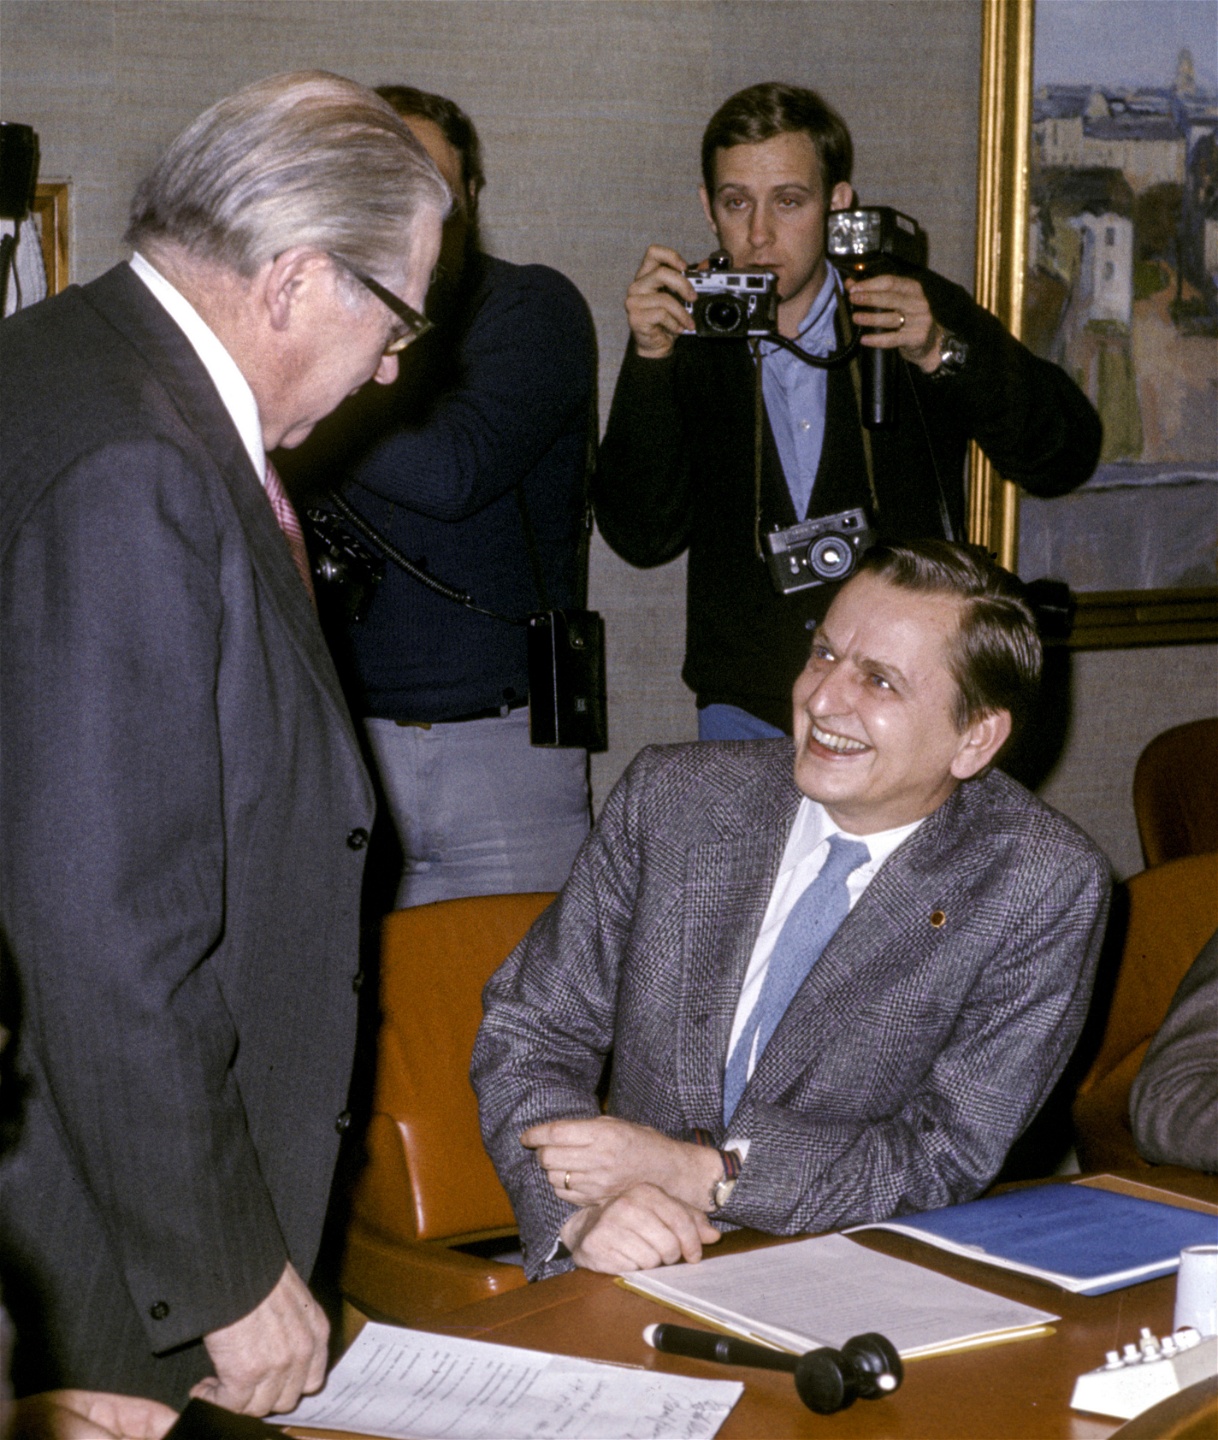 Åtminstone fram till 1980-talet hette det att socialdemokratin skulle byggas i tre steg. Sista steget var demokratiseringen av företagen. Dåvarande statsminister Olof Palme tillsammans med finansminister Gunnar Sträng 1975.